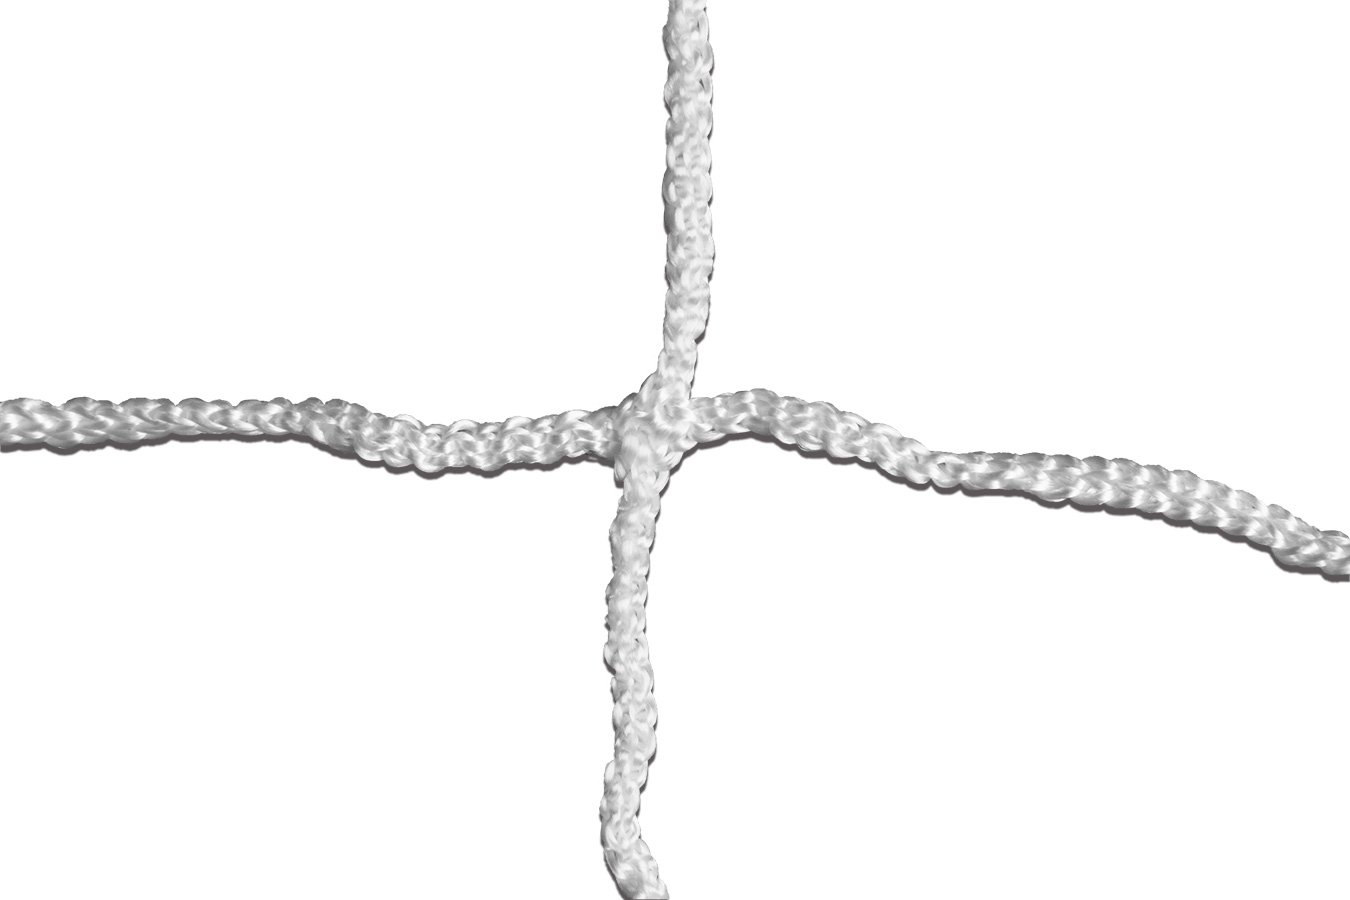 Kwikgoal 3mm Braided Knotless Net | 3B6823 Nets Kwikgoal 